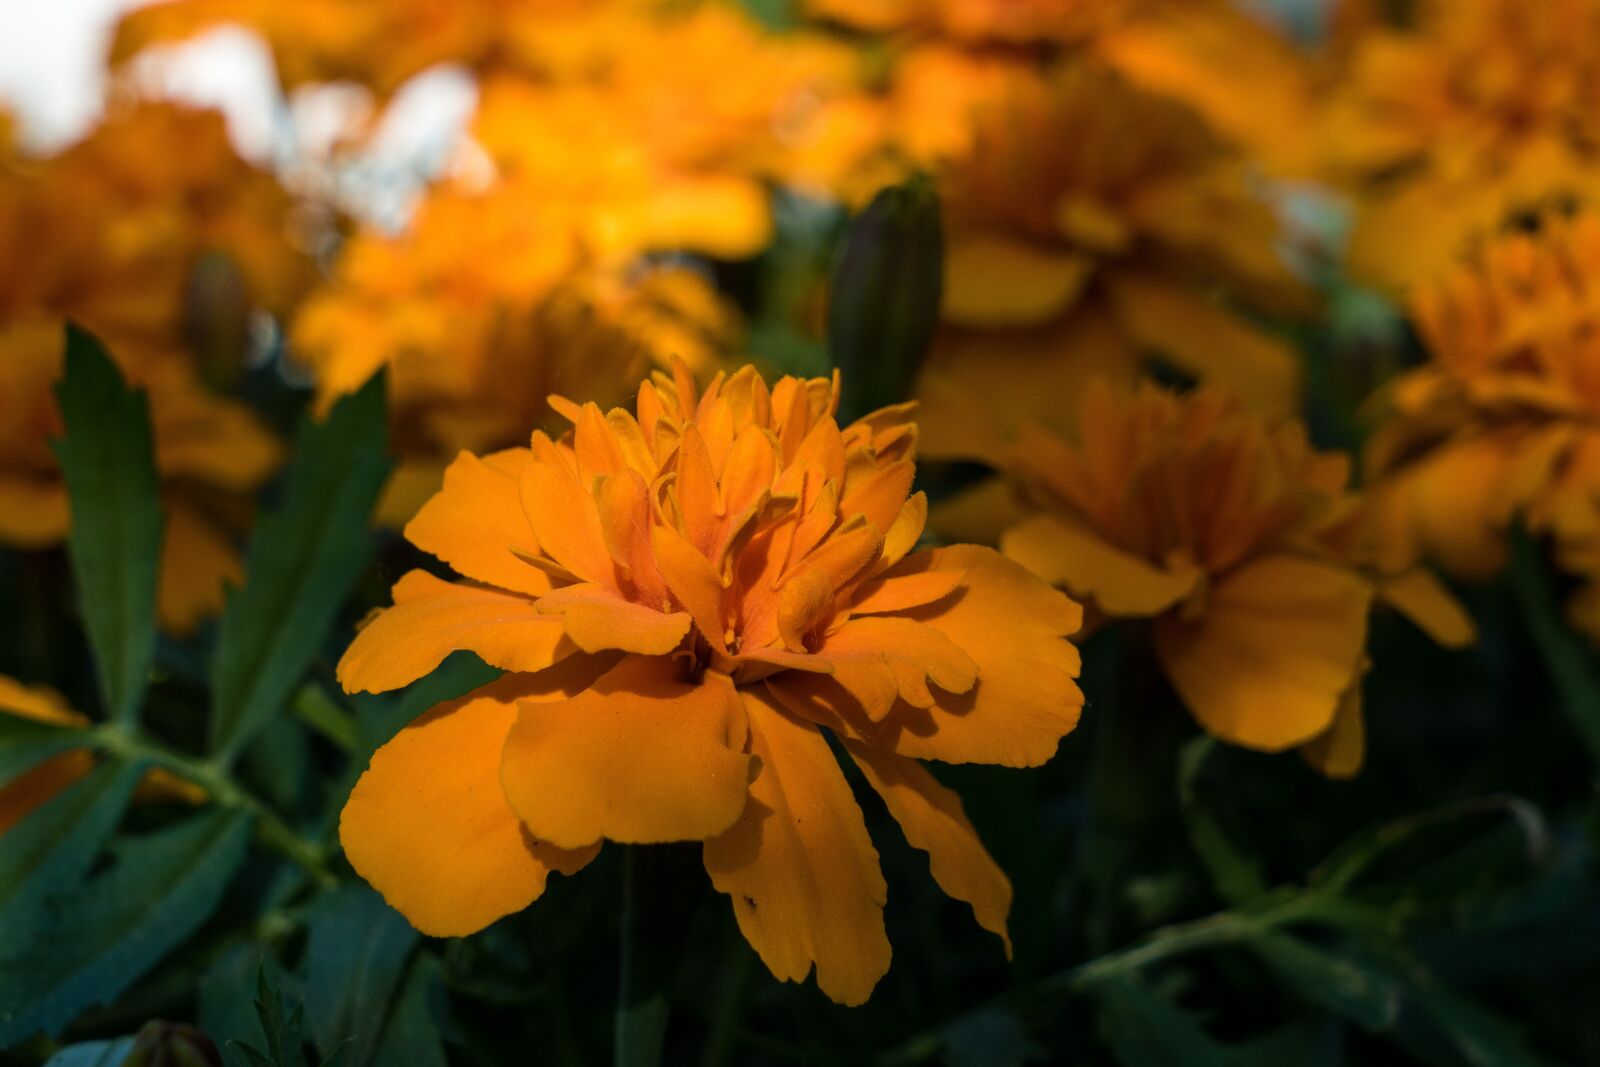 Sony a6300 + Sony Vario Tessar T* FE 24-70mm F4 ZA OSS sample photo. Barhotki, flowers, petals photography